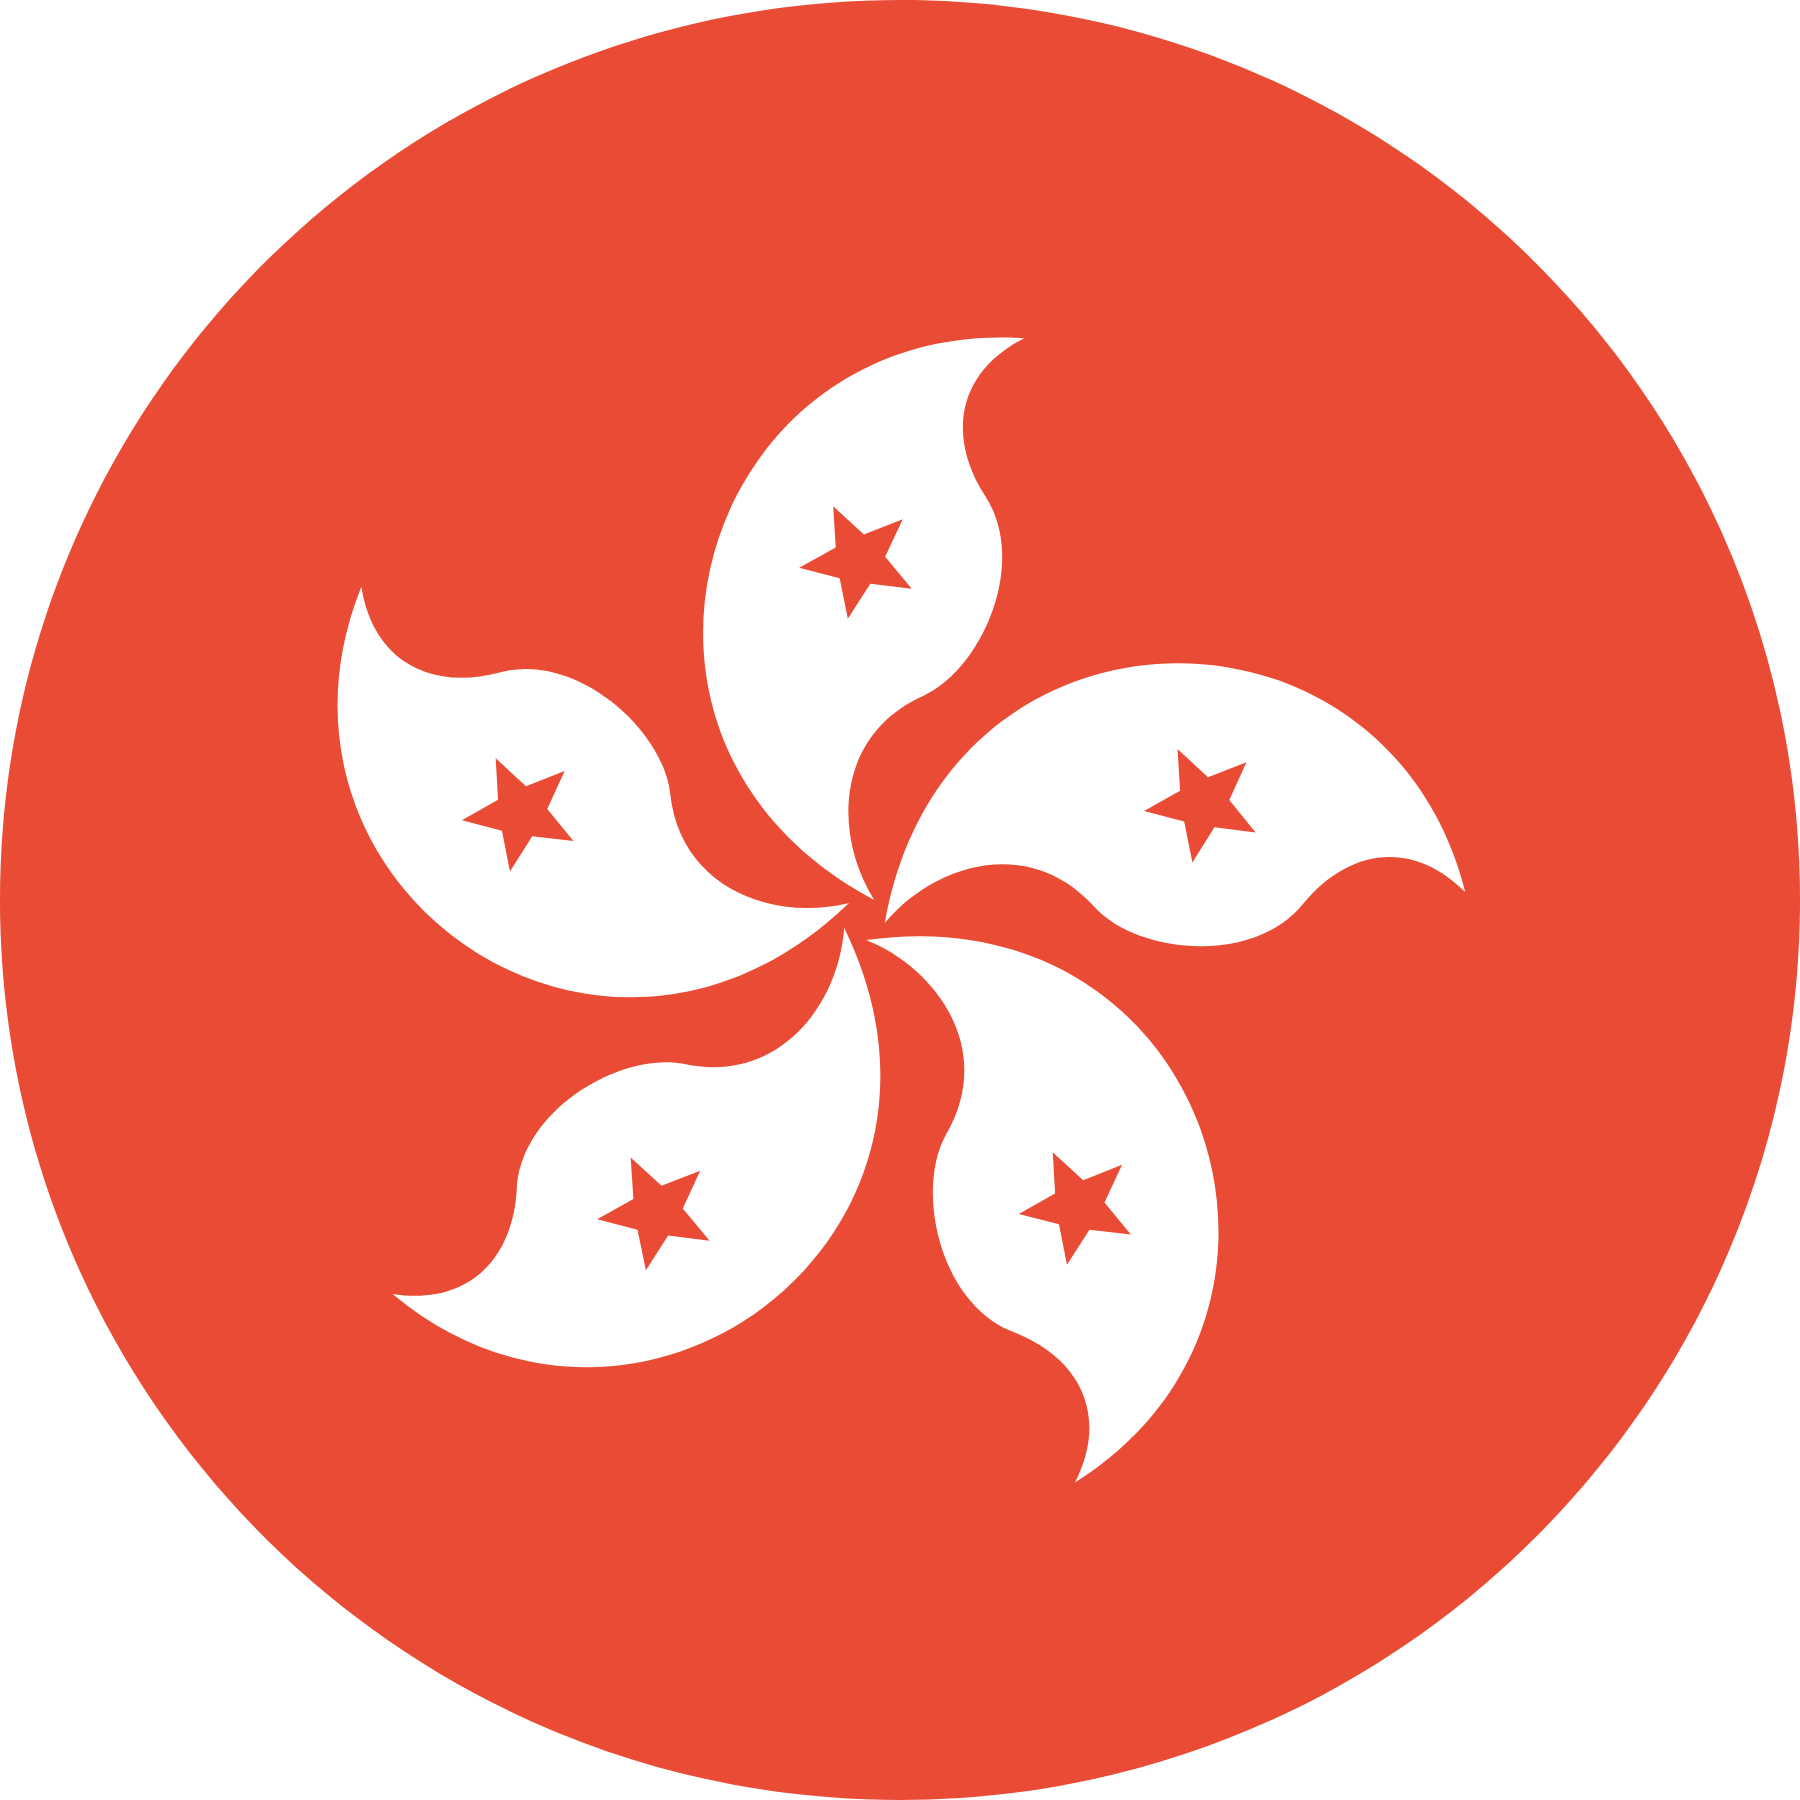 hong kong flag